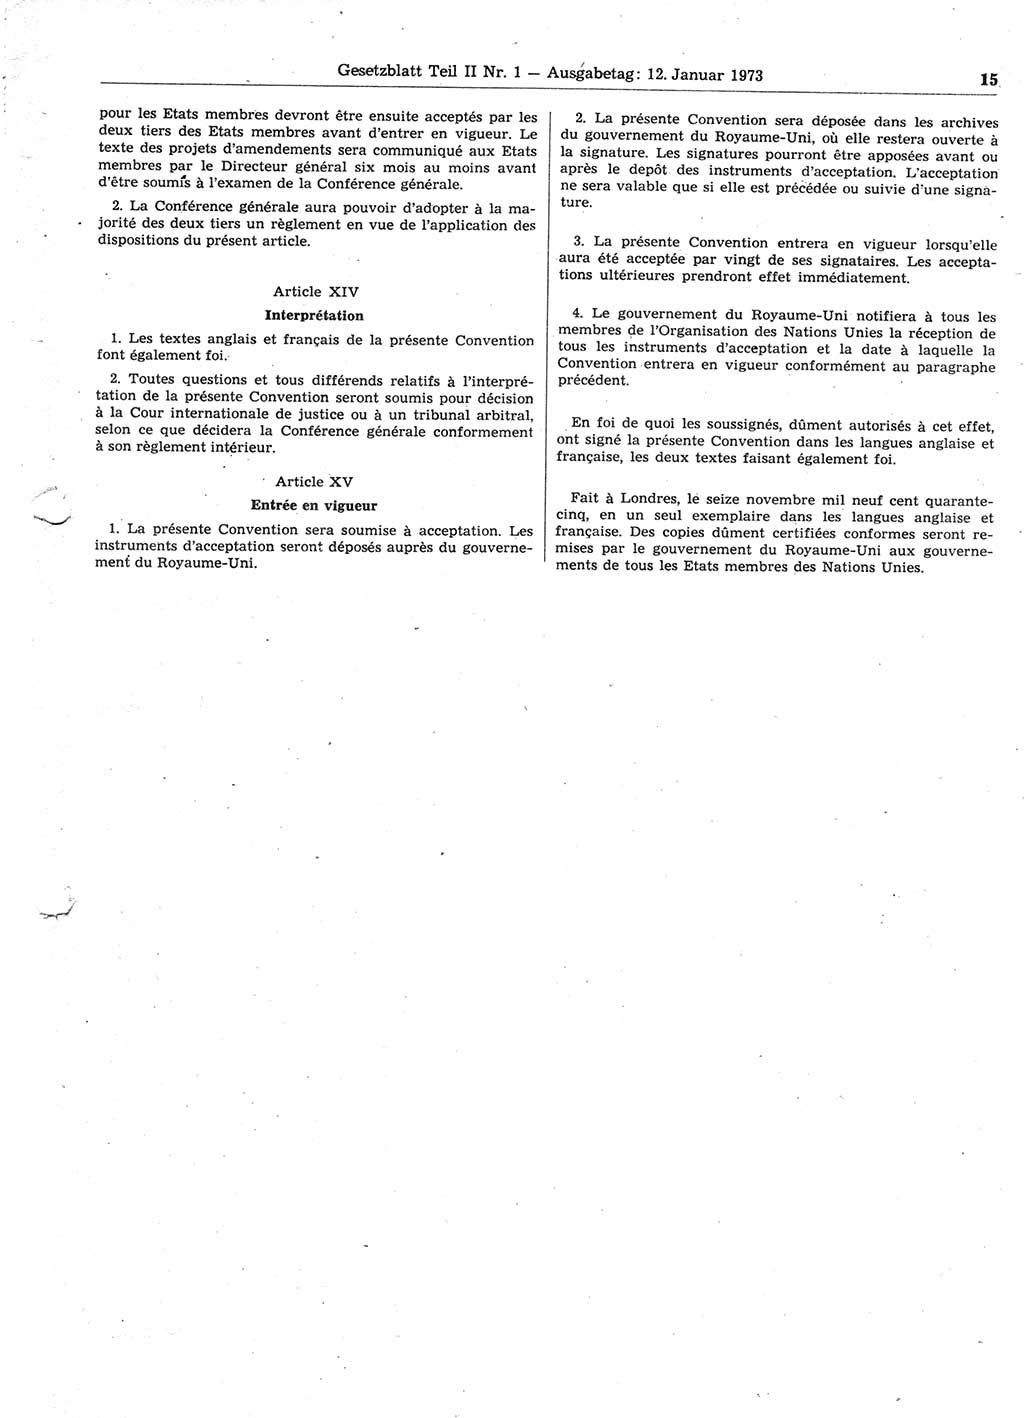 Gesetzblatt (GBl.) der Deutschen Demokratischen Republik (DDR) Teil ⅠⅠ 1973, Seite 15 (GBl. DDR ⅠⅠ 1973, S. 15)